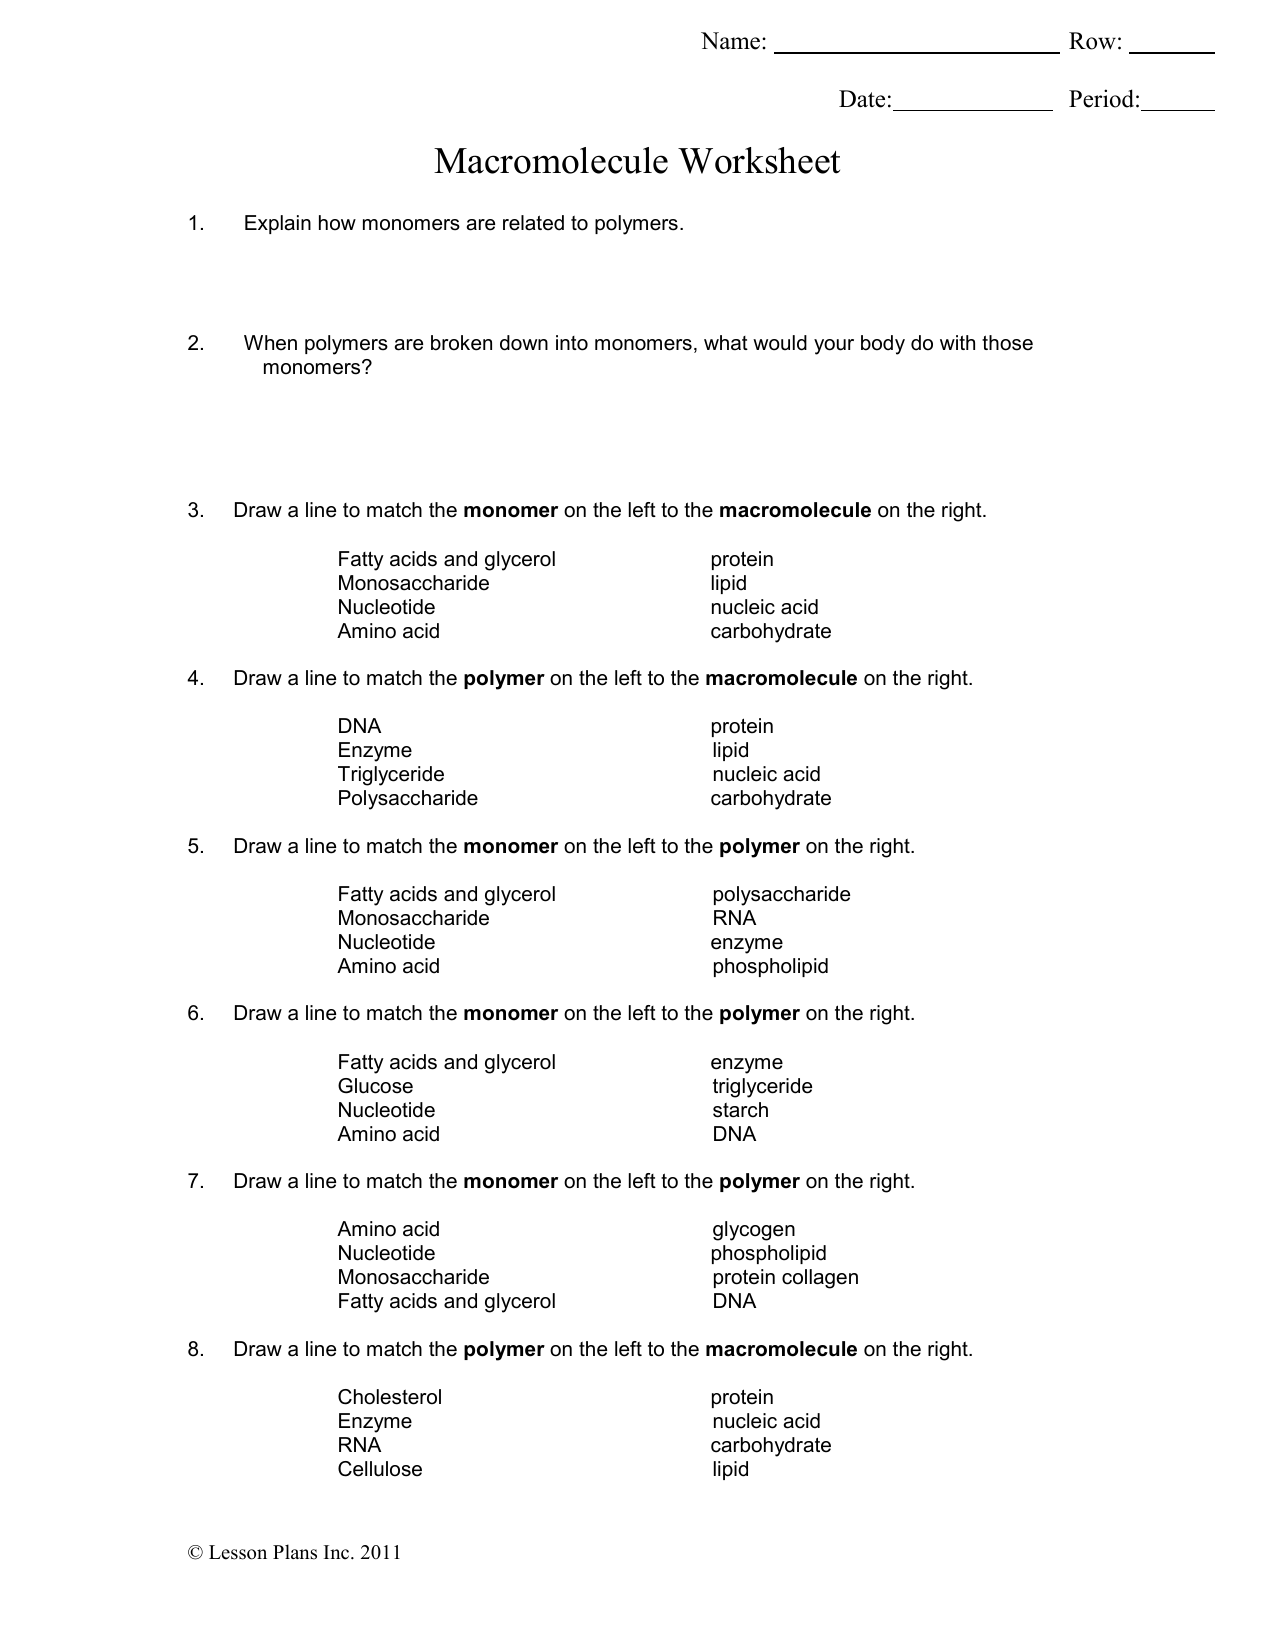 Macromolecule Worksheet Pertaining To Macromolecules Worksheet Answer Key